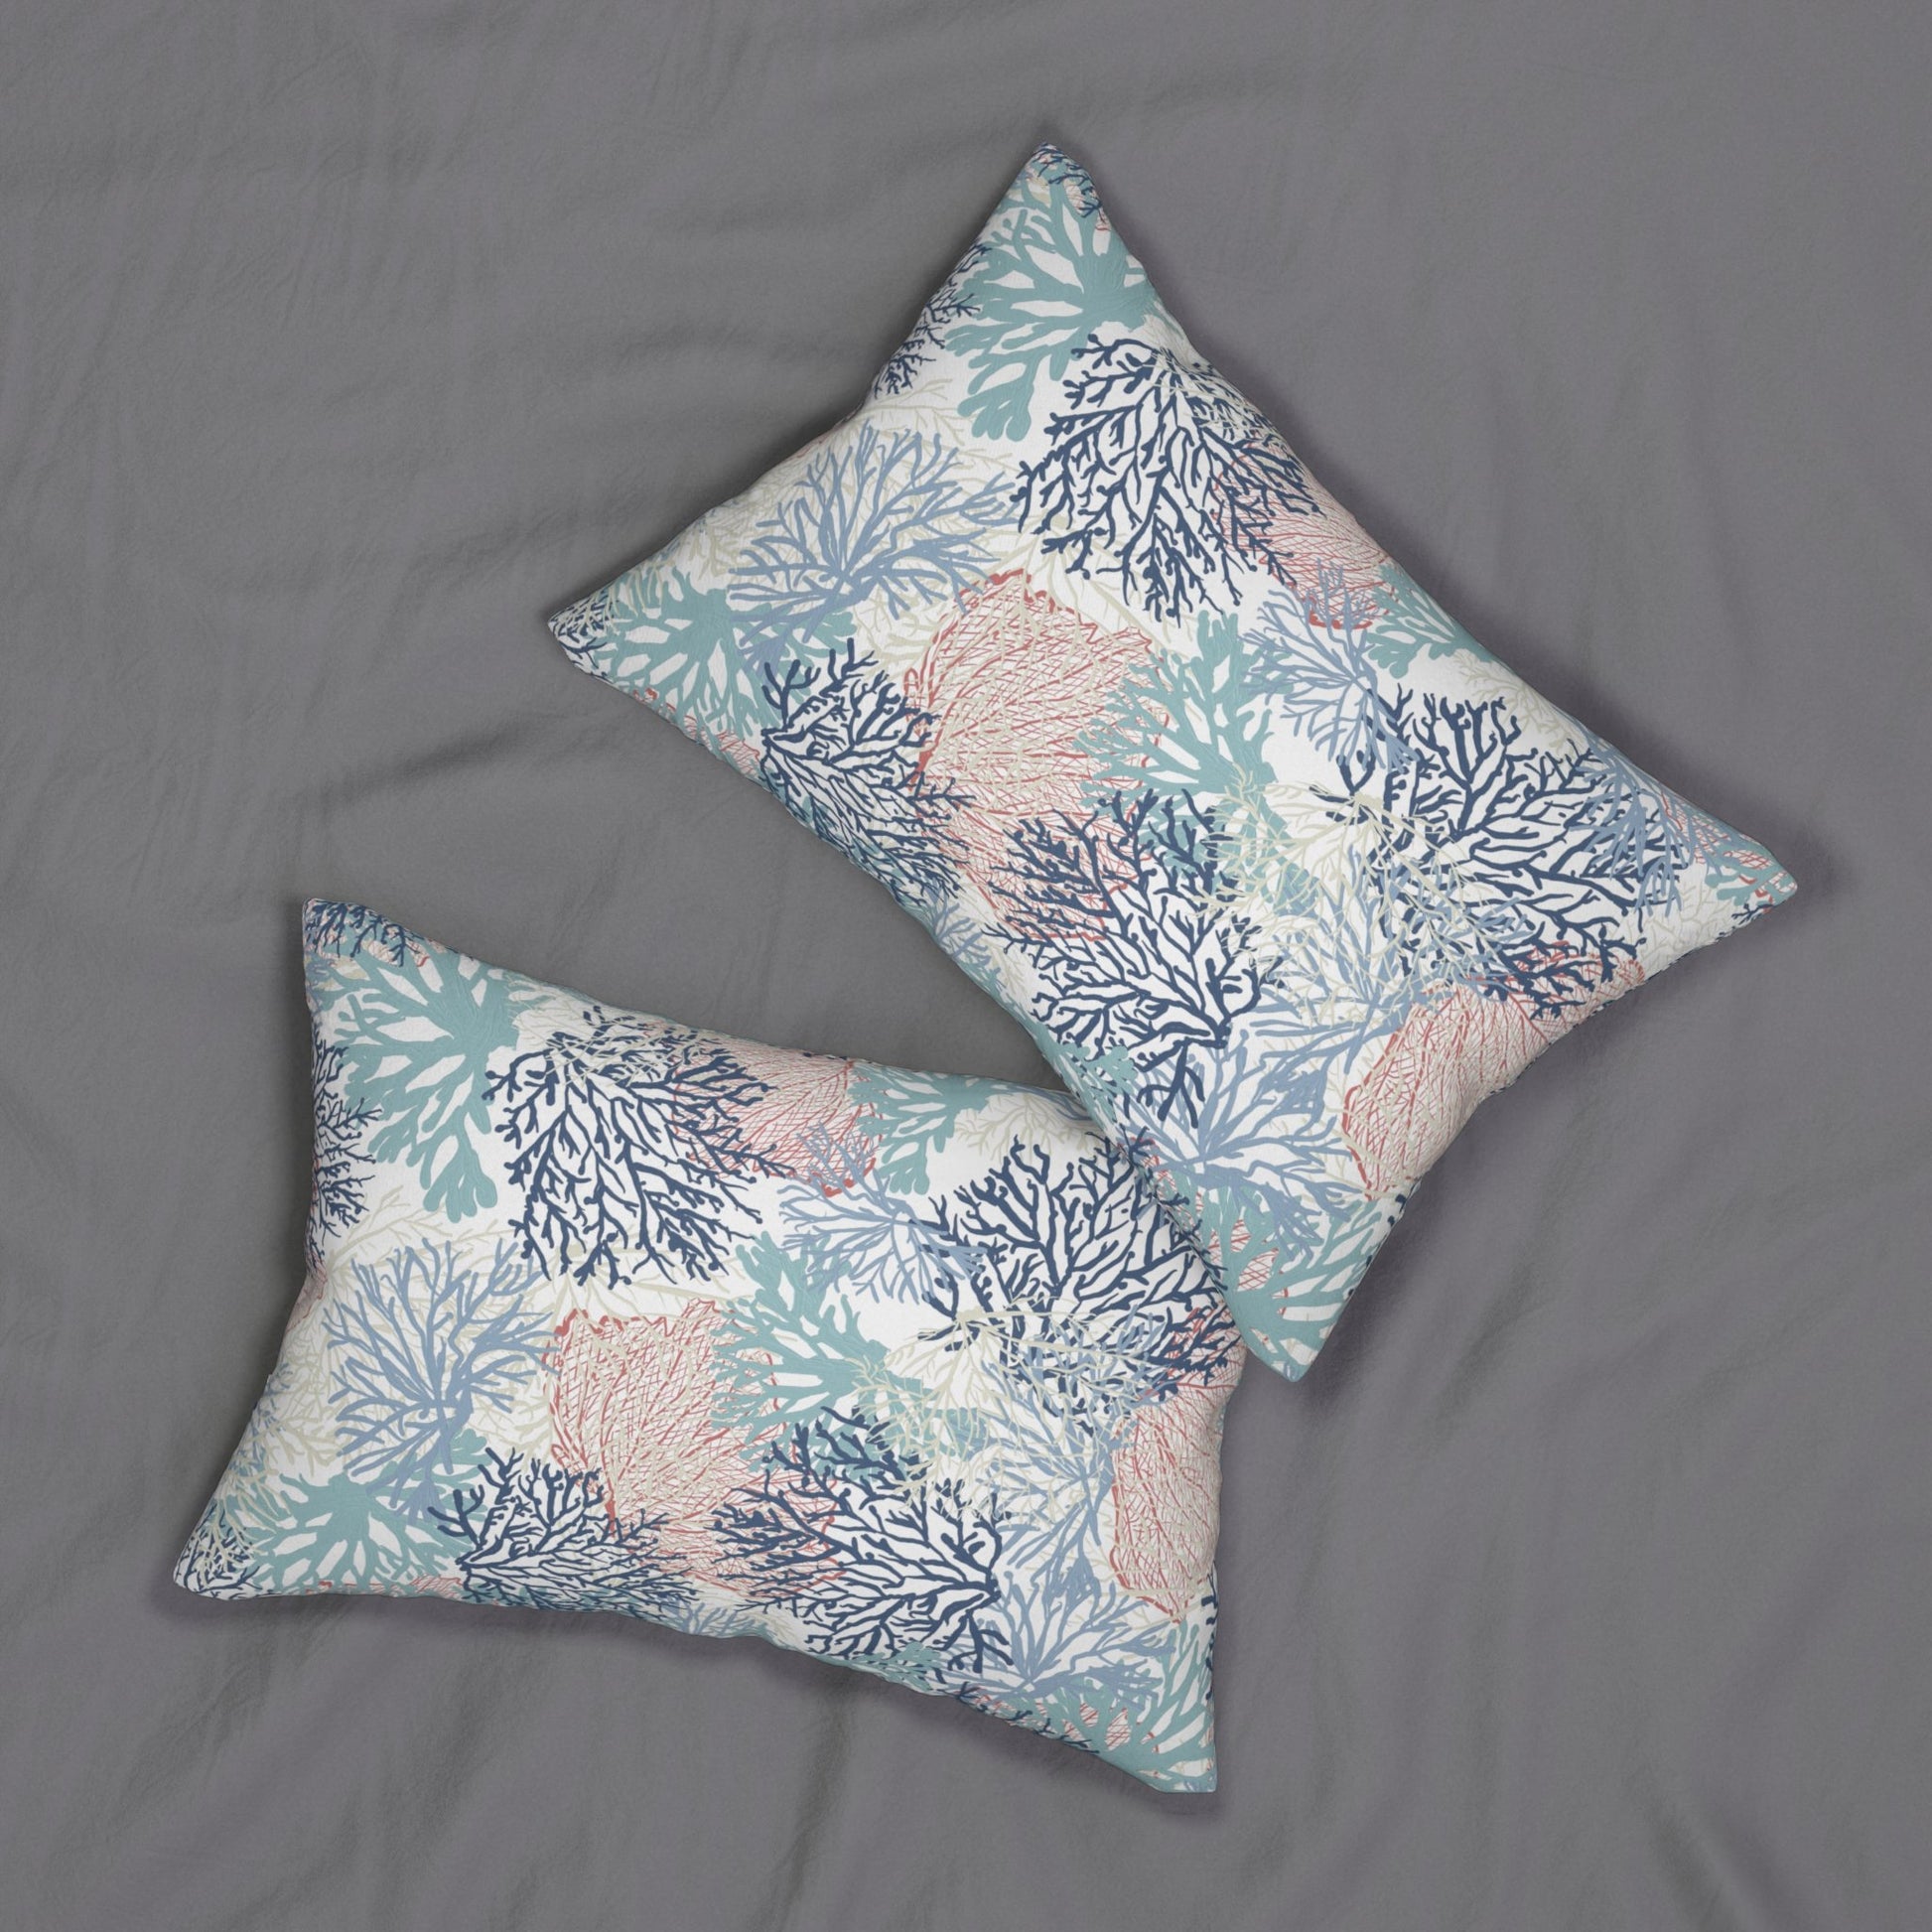 Coral Spun Polyester Lumbar Pillow - Blue Cava